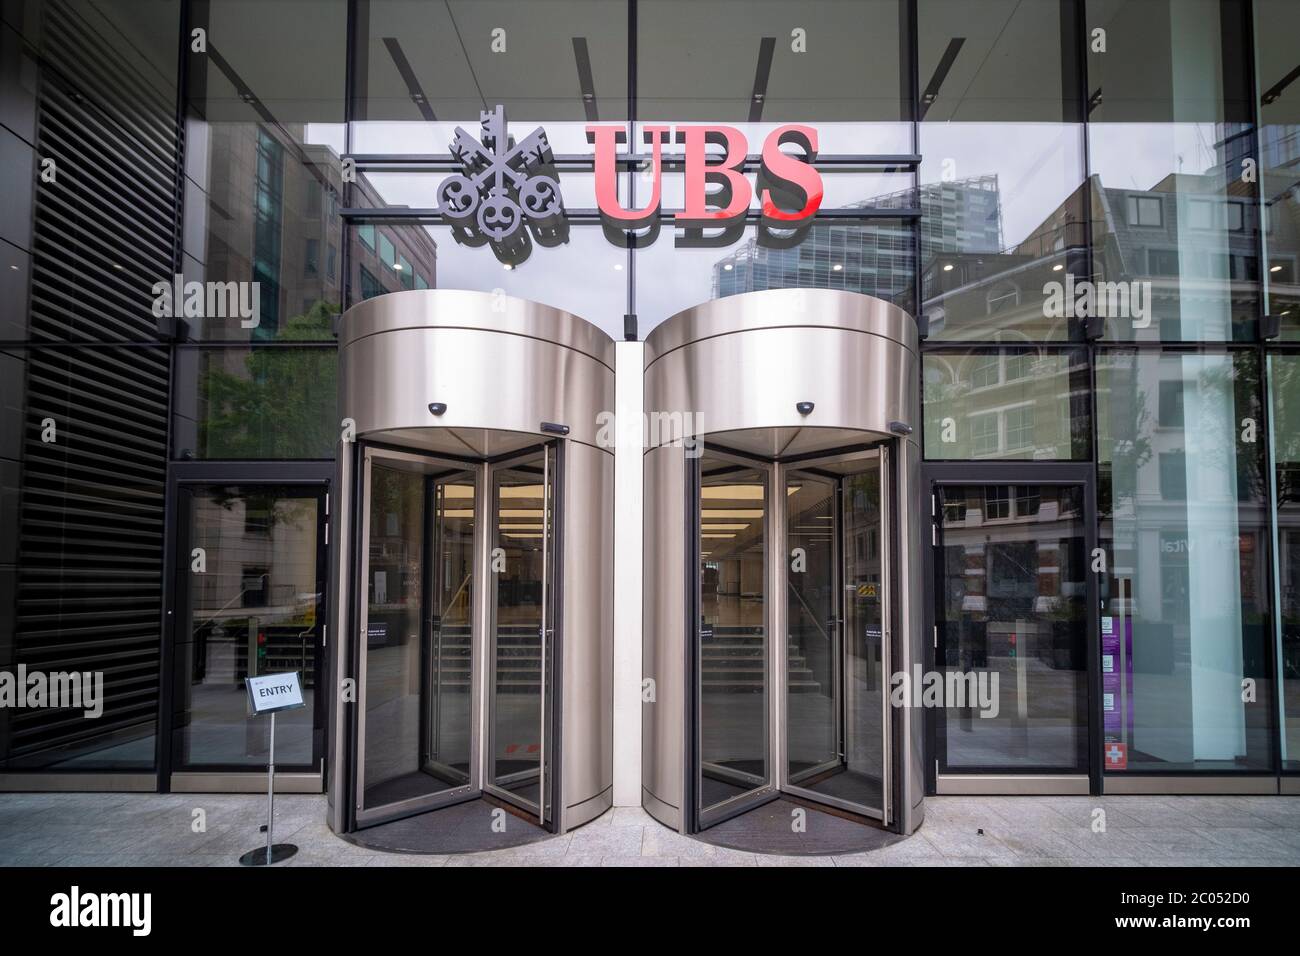 LONDON - JUNI 2020: UBS Group AG in der City of London - ein Schweizer multinationales Investmentbank- und Finanzdienstleistungsunternehmen Stockfoto